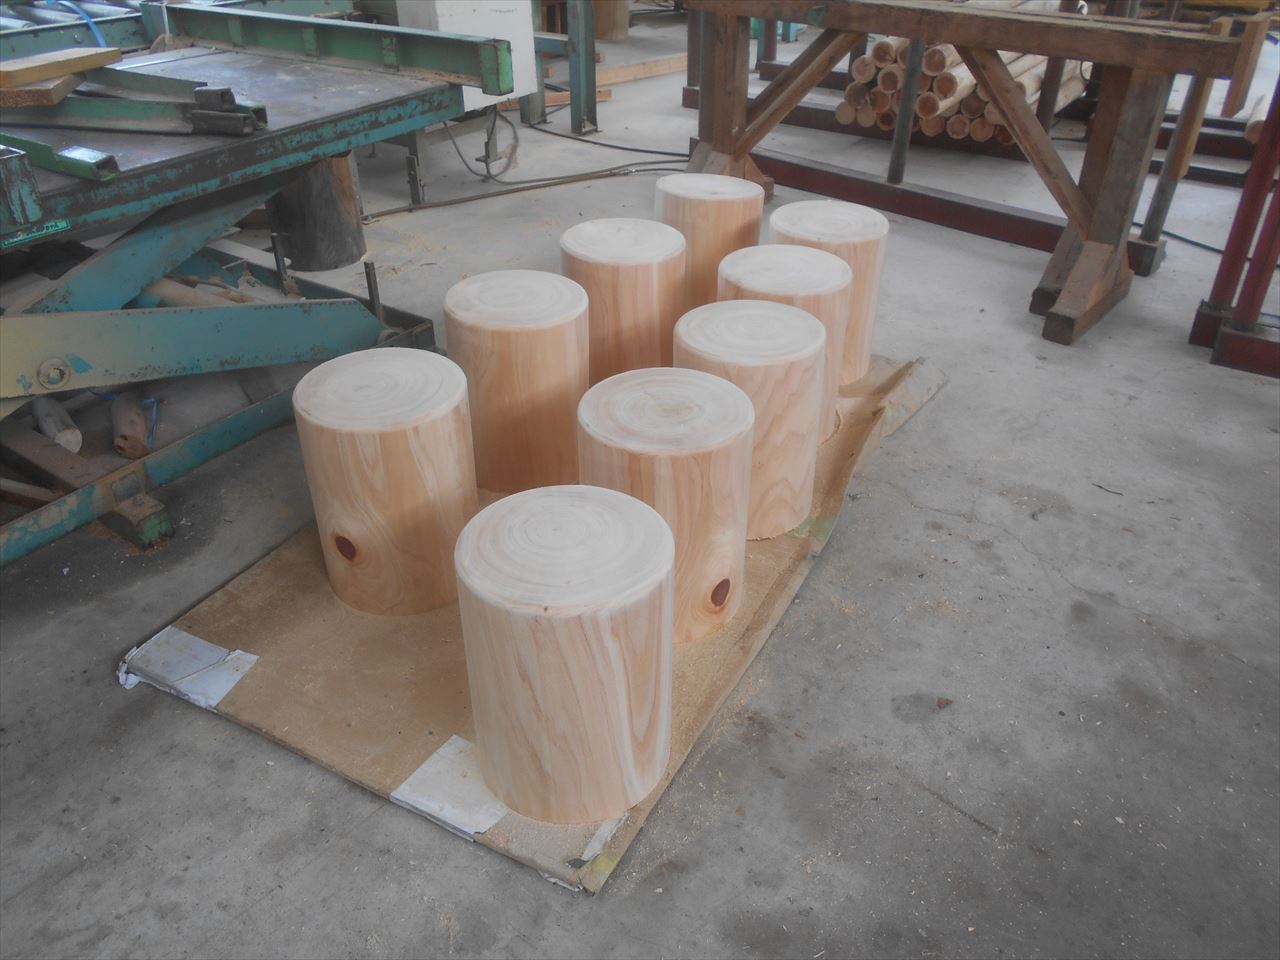 丸太スツール』（丸太いす・丸太椅子）の元となる「円柱材・丸棒材」の生産で実績があり。 | 木原木材店